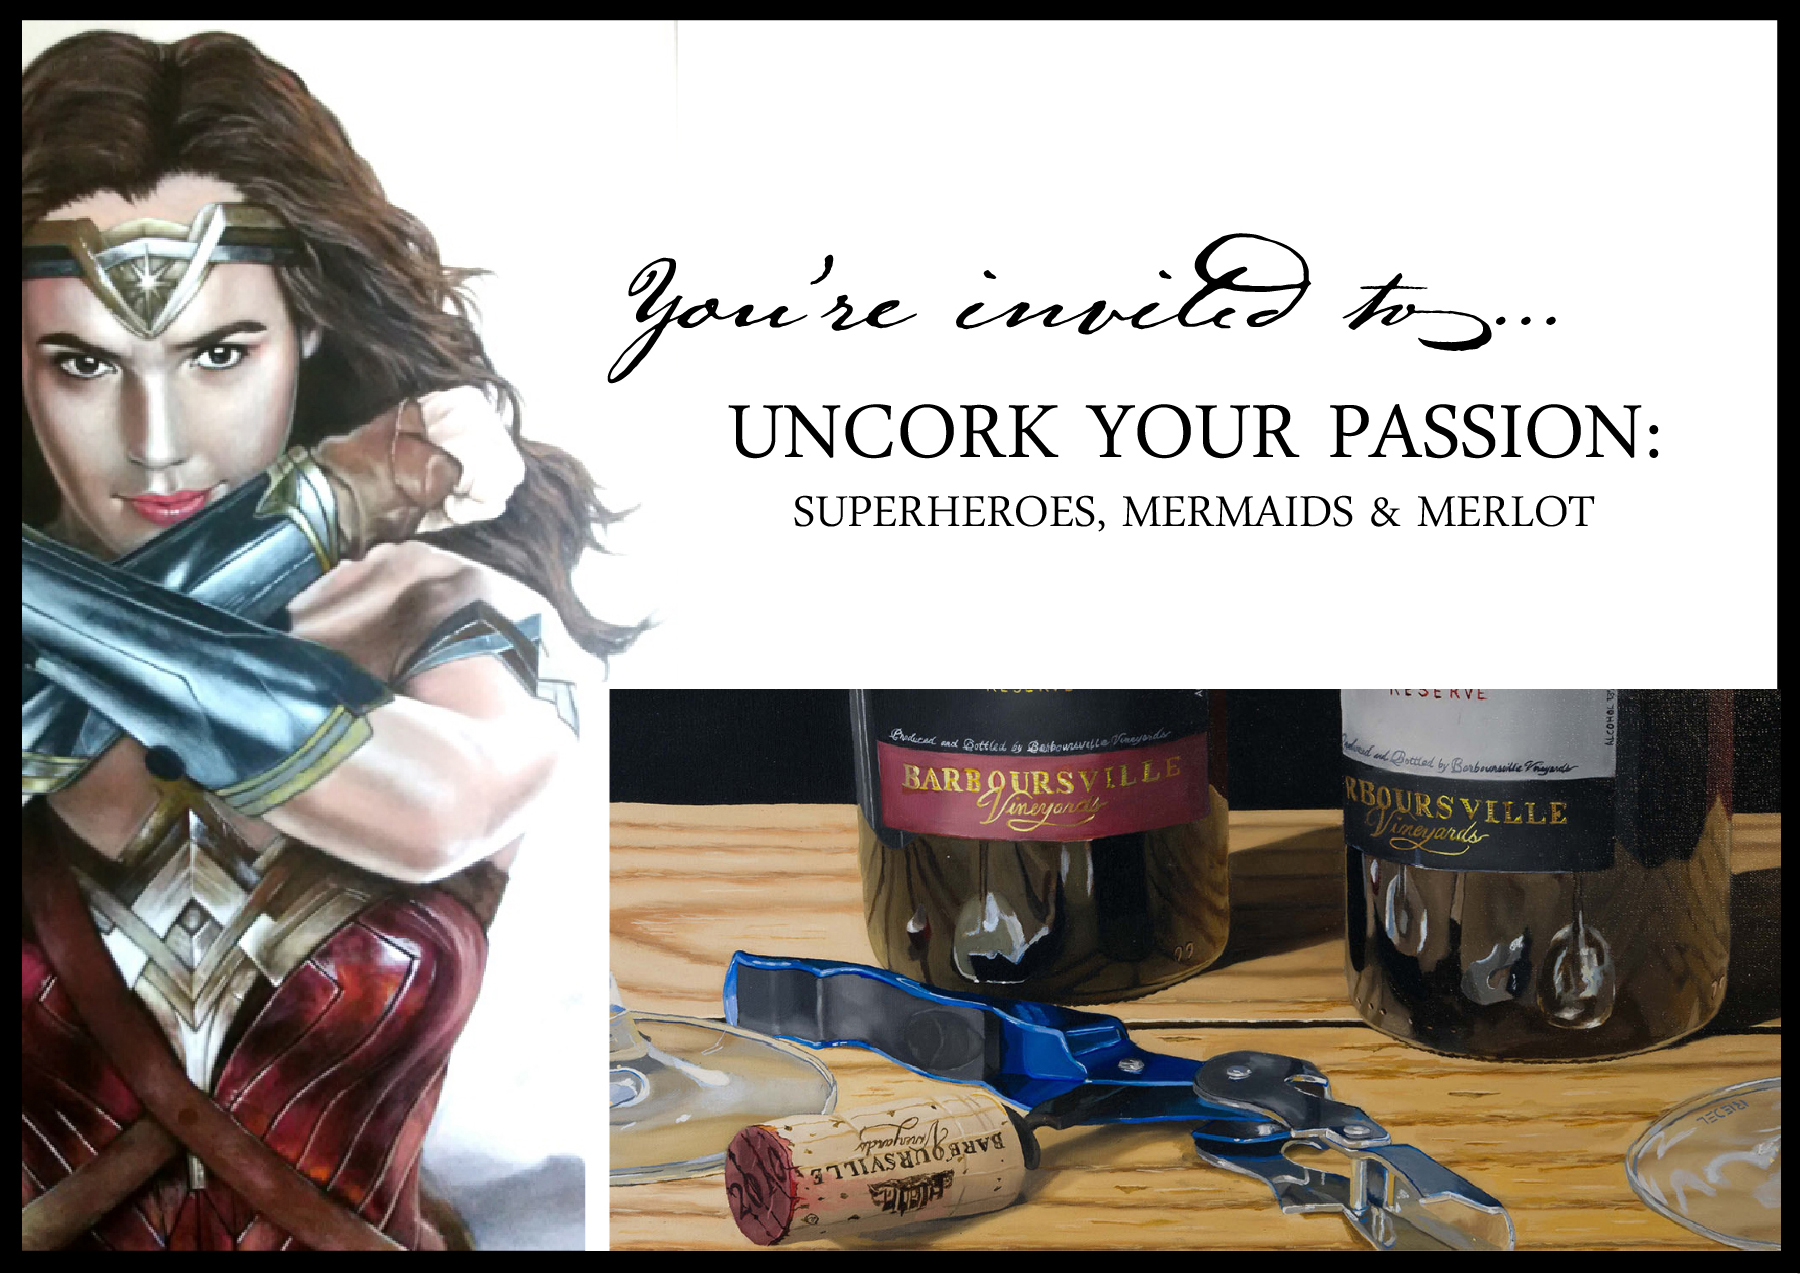 Uncork Your Passion invitation